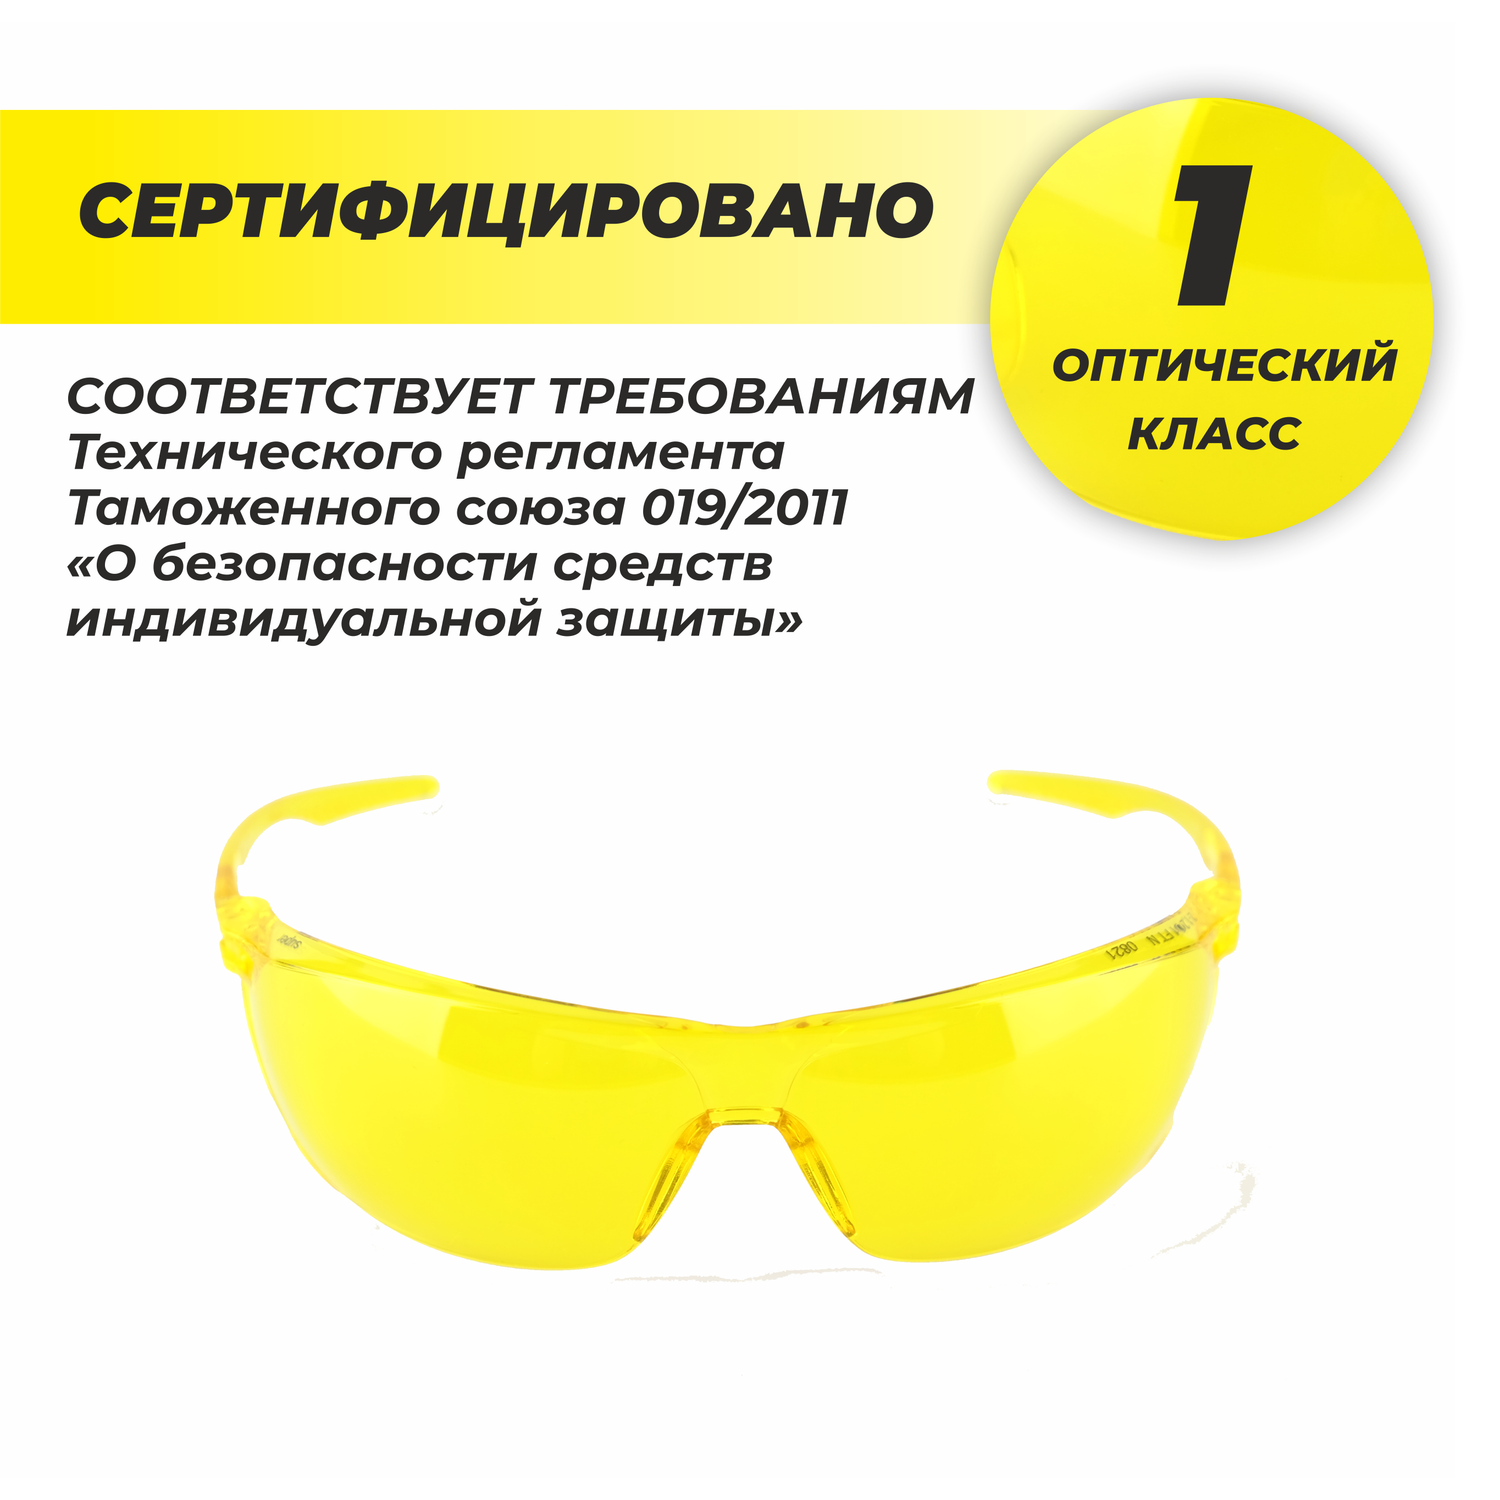 Очки защитные РОСОМЗ О88 SURGUT желтые - фото 11